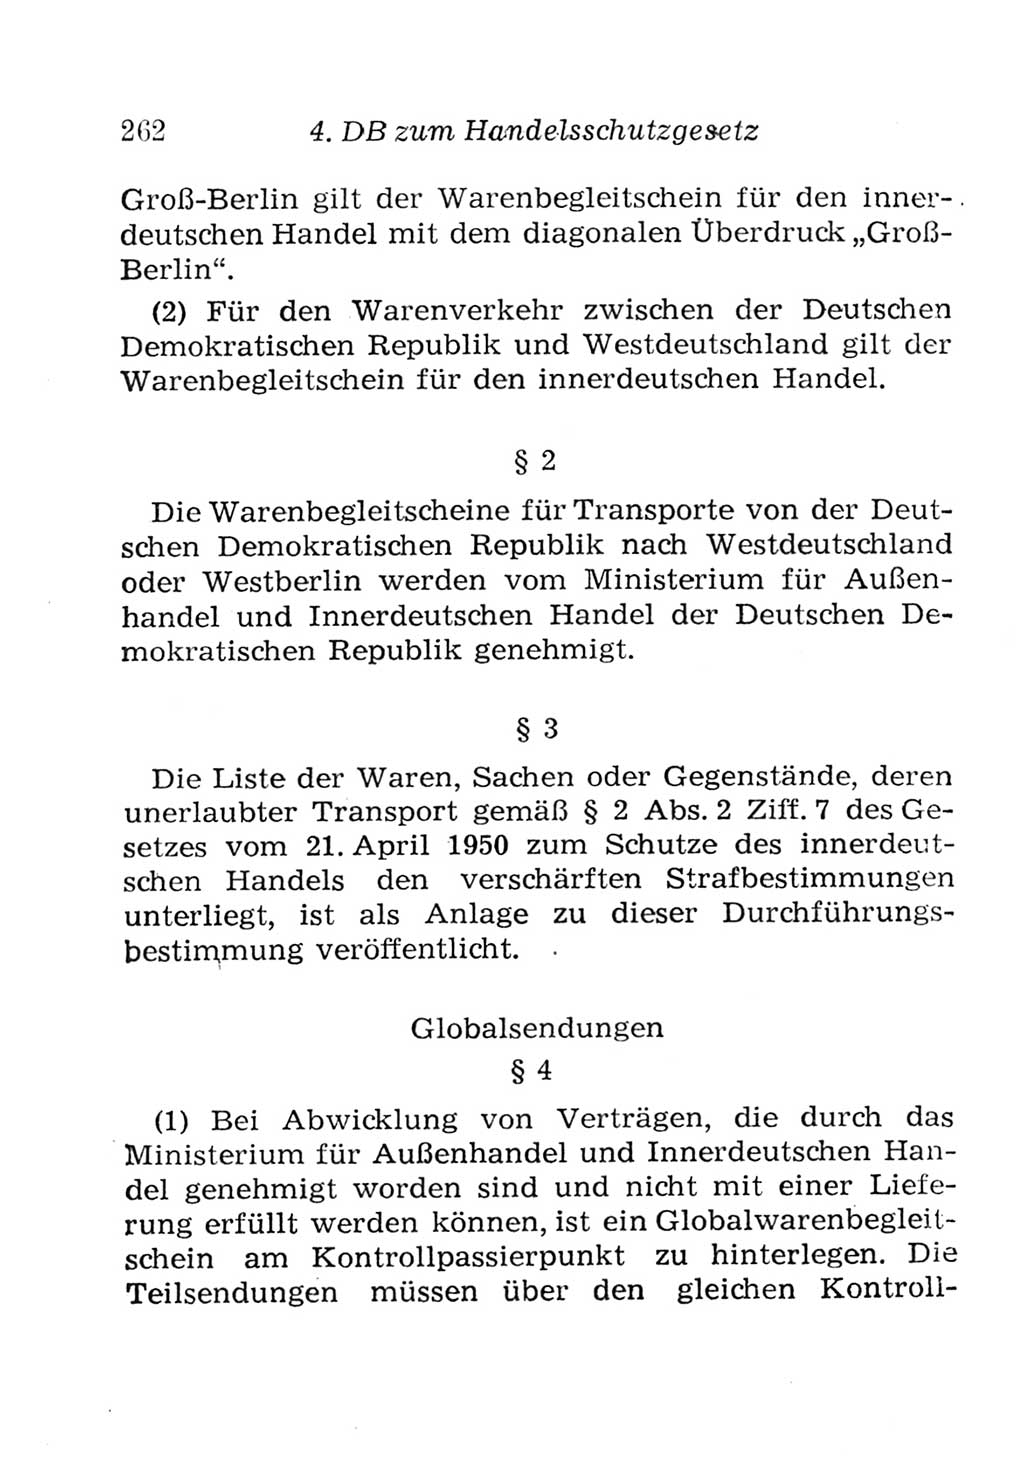 Strafgesetzbuch (StGB) und andere Strafgesetze [Deutsche Demokratische Republik (DDR)] 1957, Seite 262 (StGB Strafges. DDR 1957, S. 262)